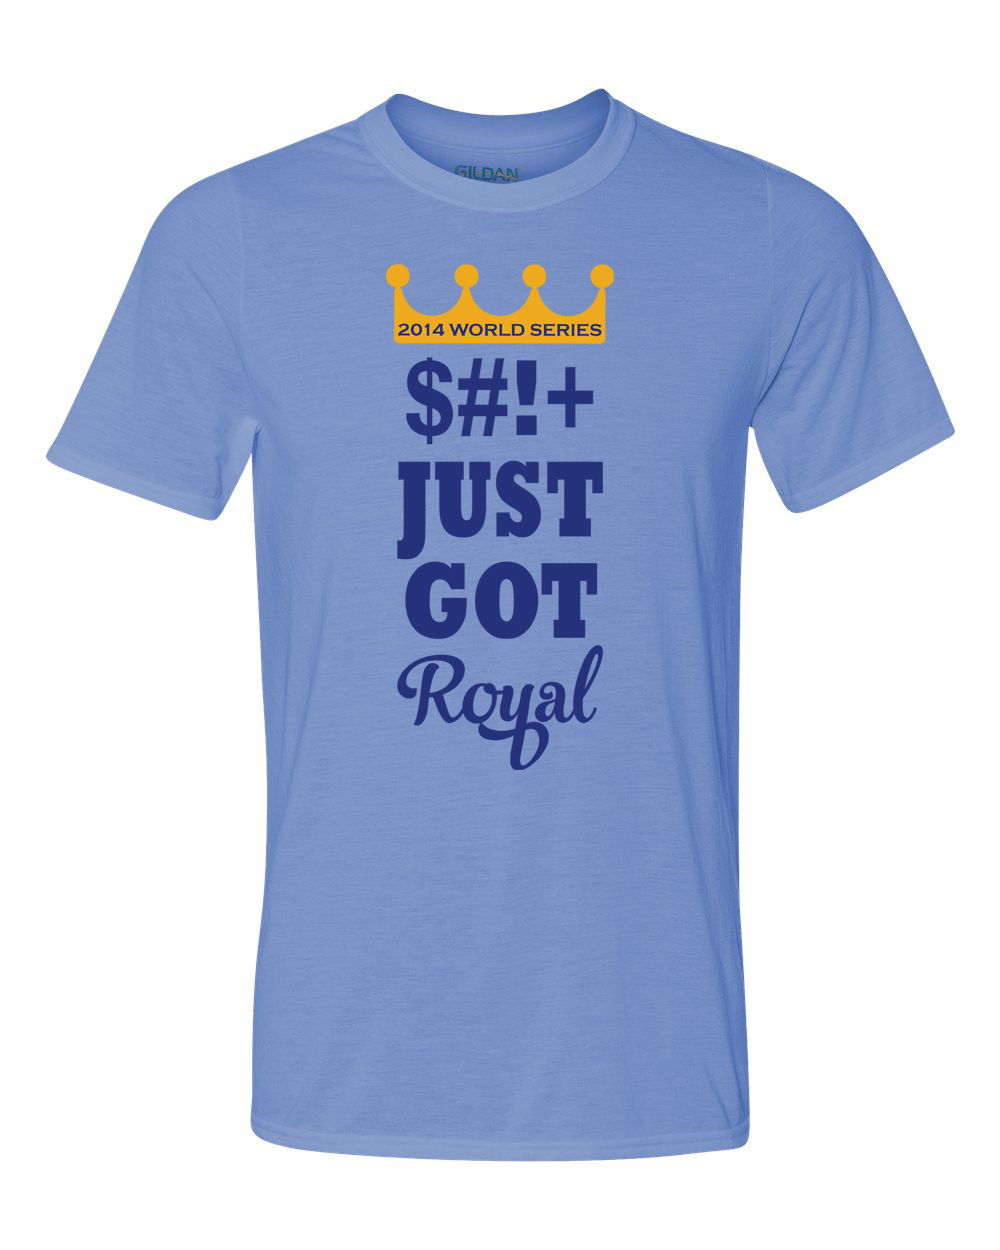 Kansas City Royals T-Shirt & Web Design